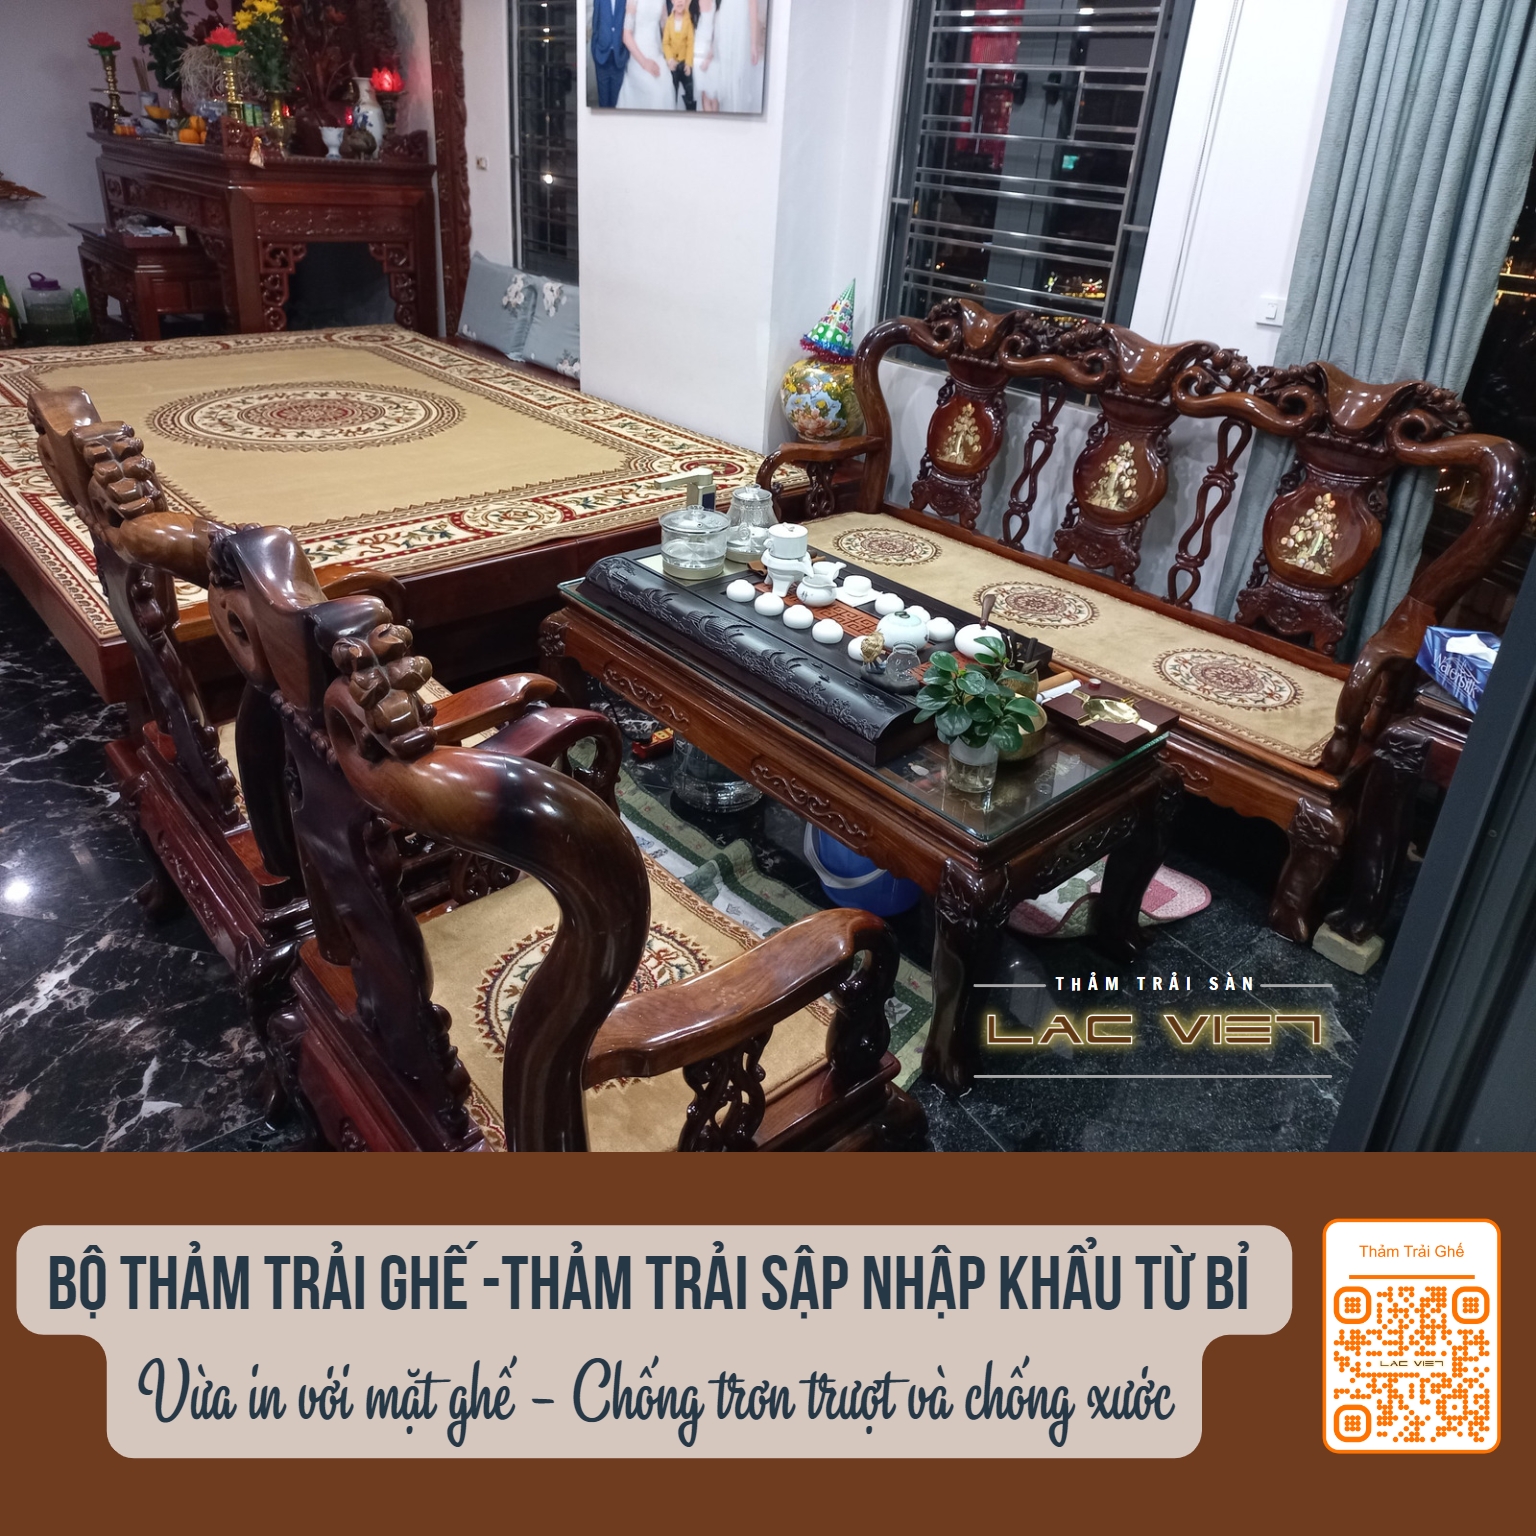 tham-trai-san-lac-viet-combo thảm trải sập và thảm trải ghế cho phòng thờ (4)